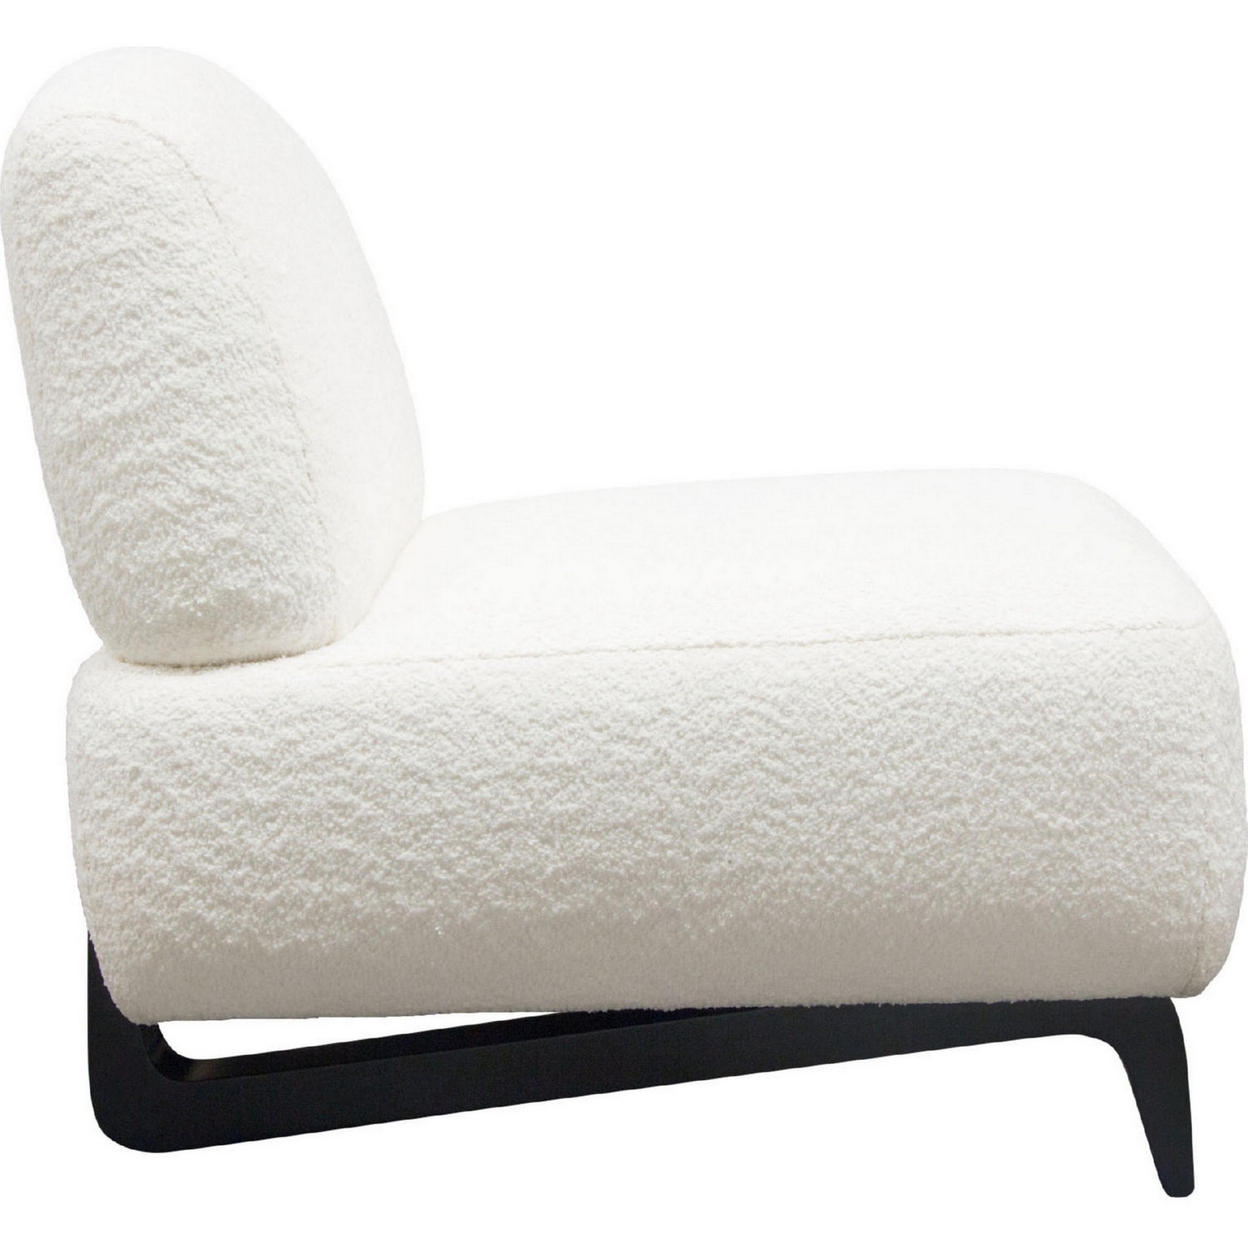 Ikka 30 Inch Padded Armless Chair, Crisp White Faux Sheepskin Upholstery- Saltoro Sherpi